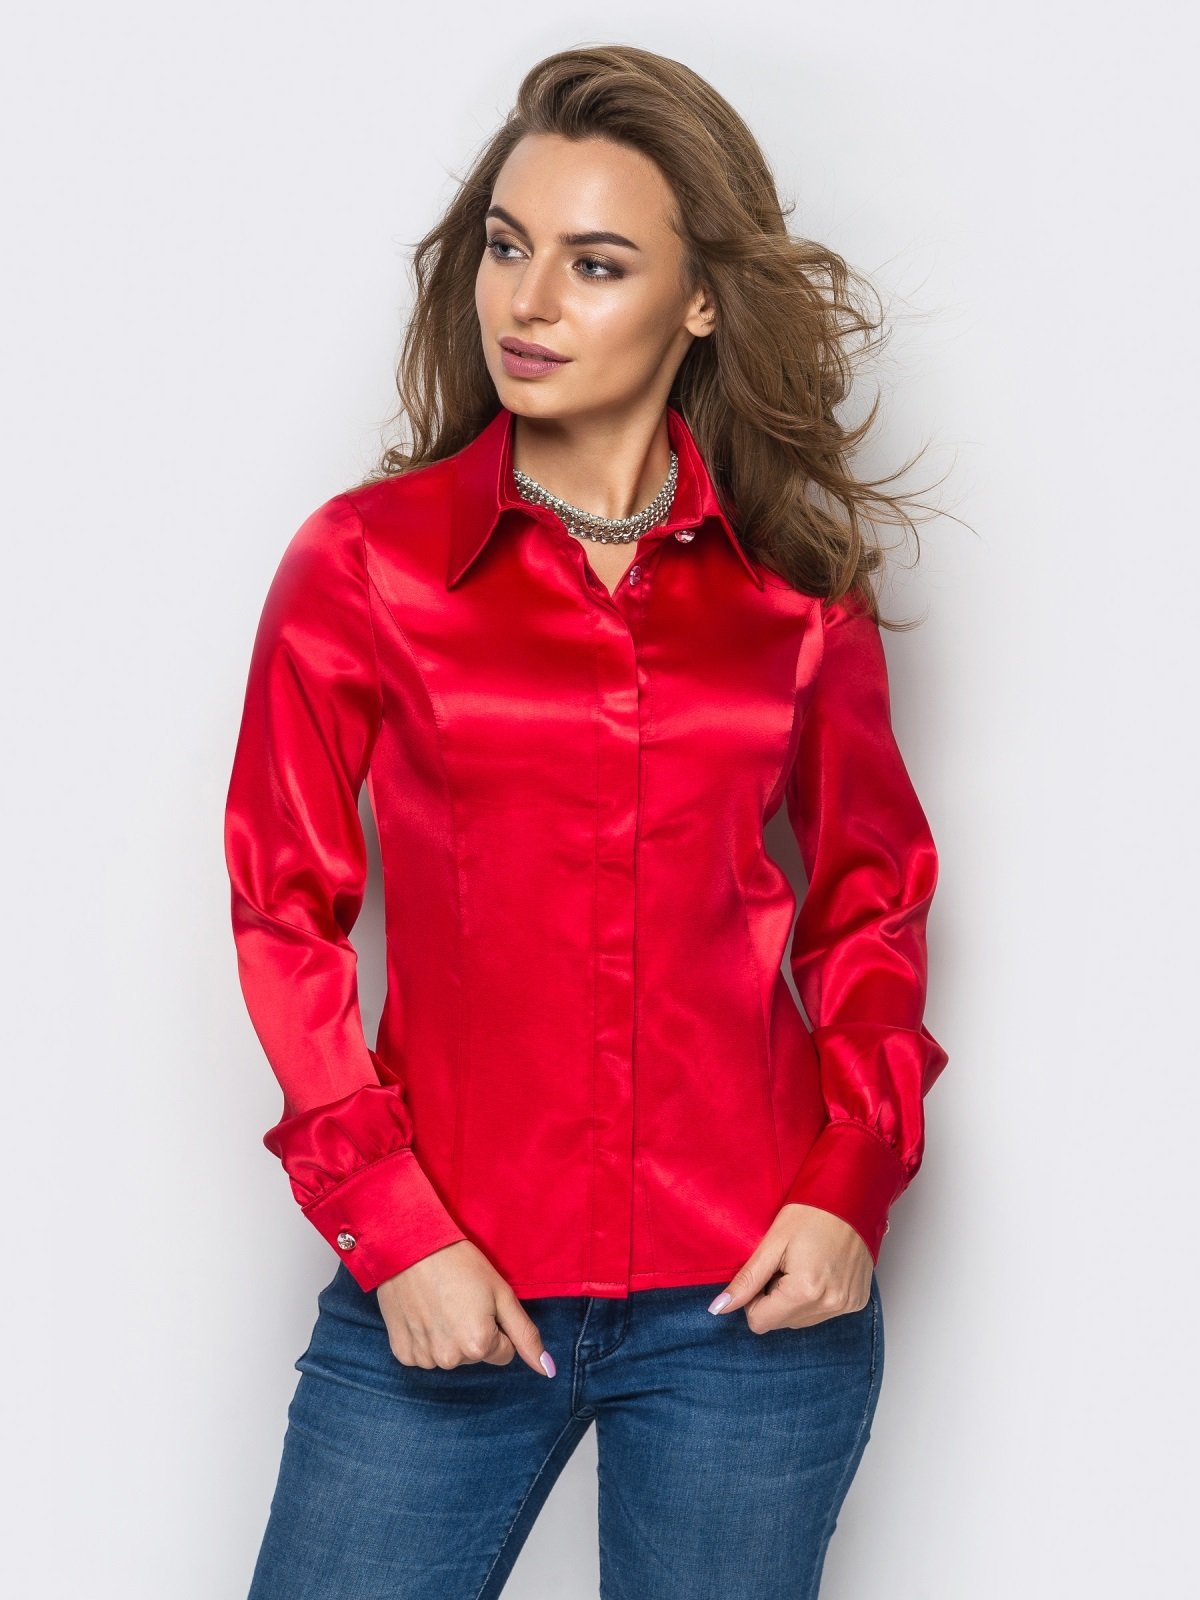 Красные блузки женская. Красная рубашка женская. Красная атласная блузка. Атласная рубашка женская. Красная атласная рубашка.